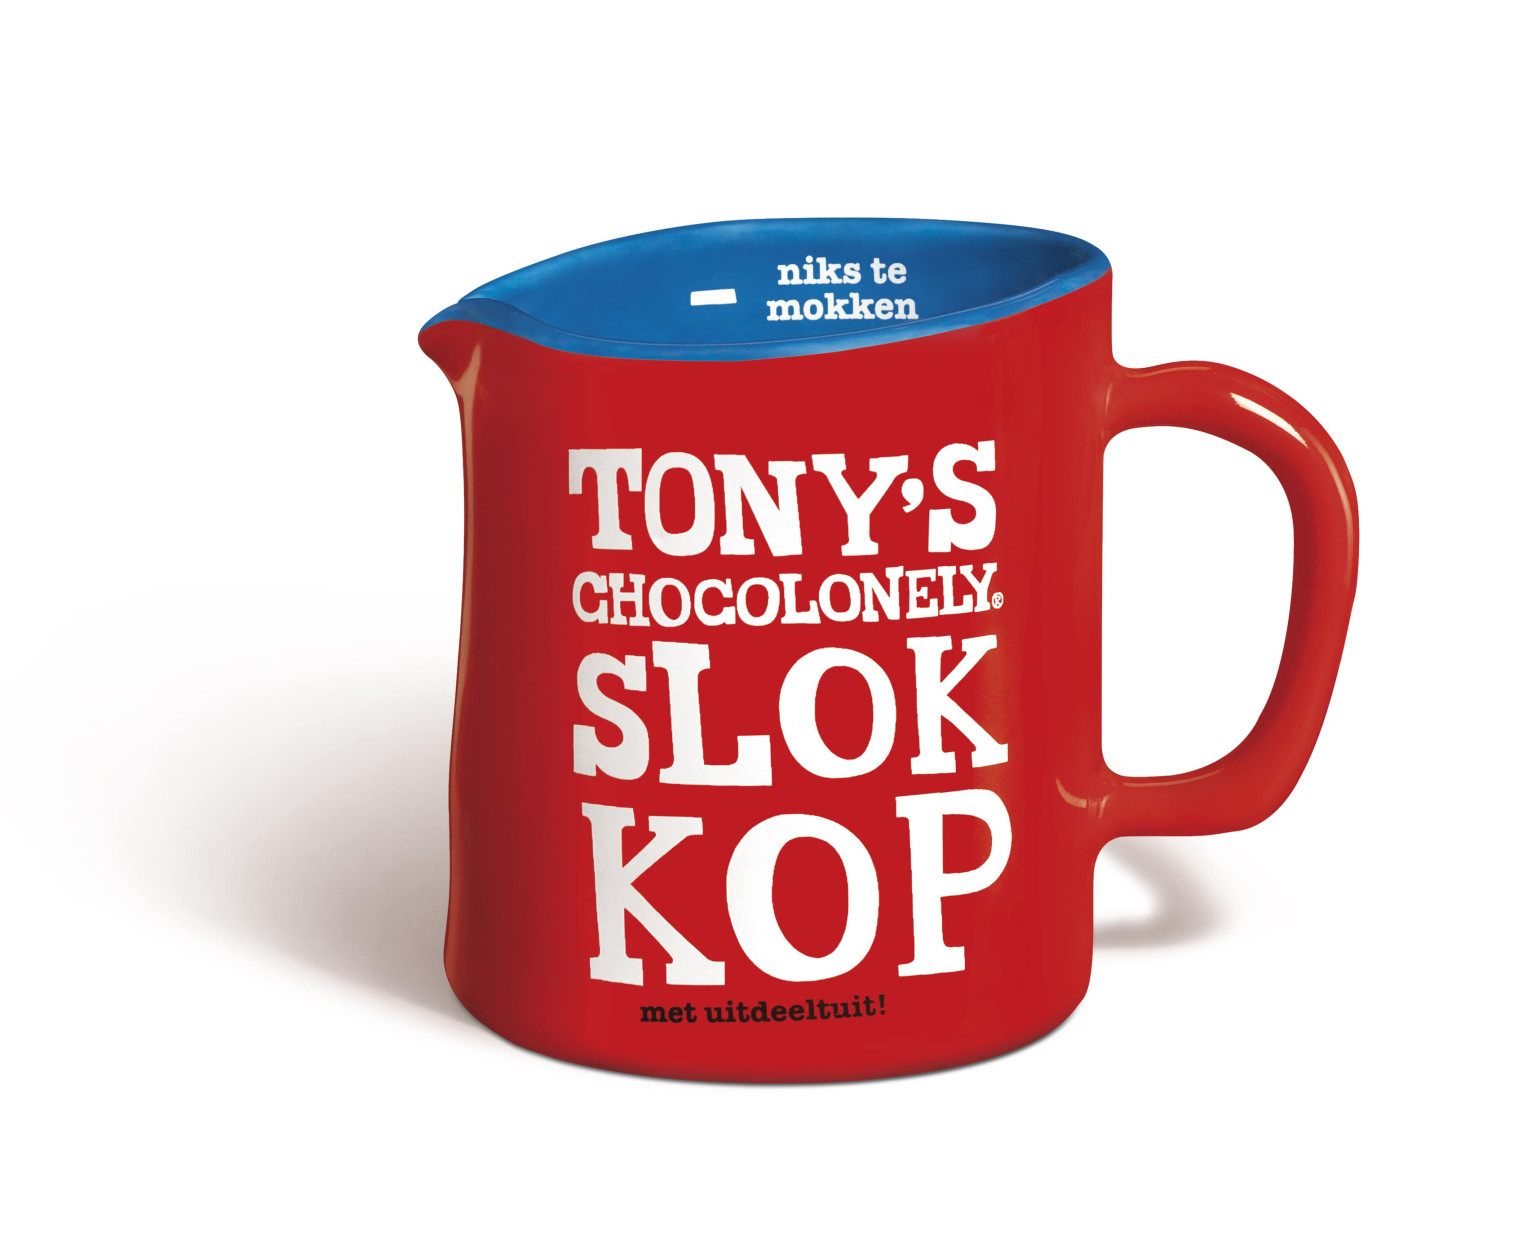 Tony's Chocoshop - Tony's Chocolonely